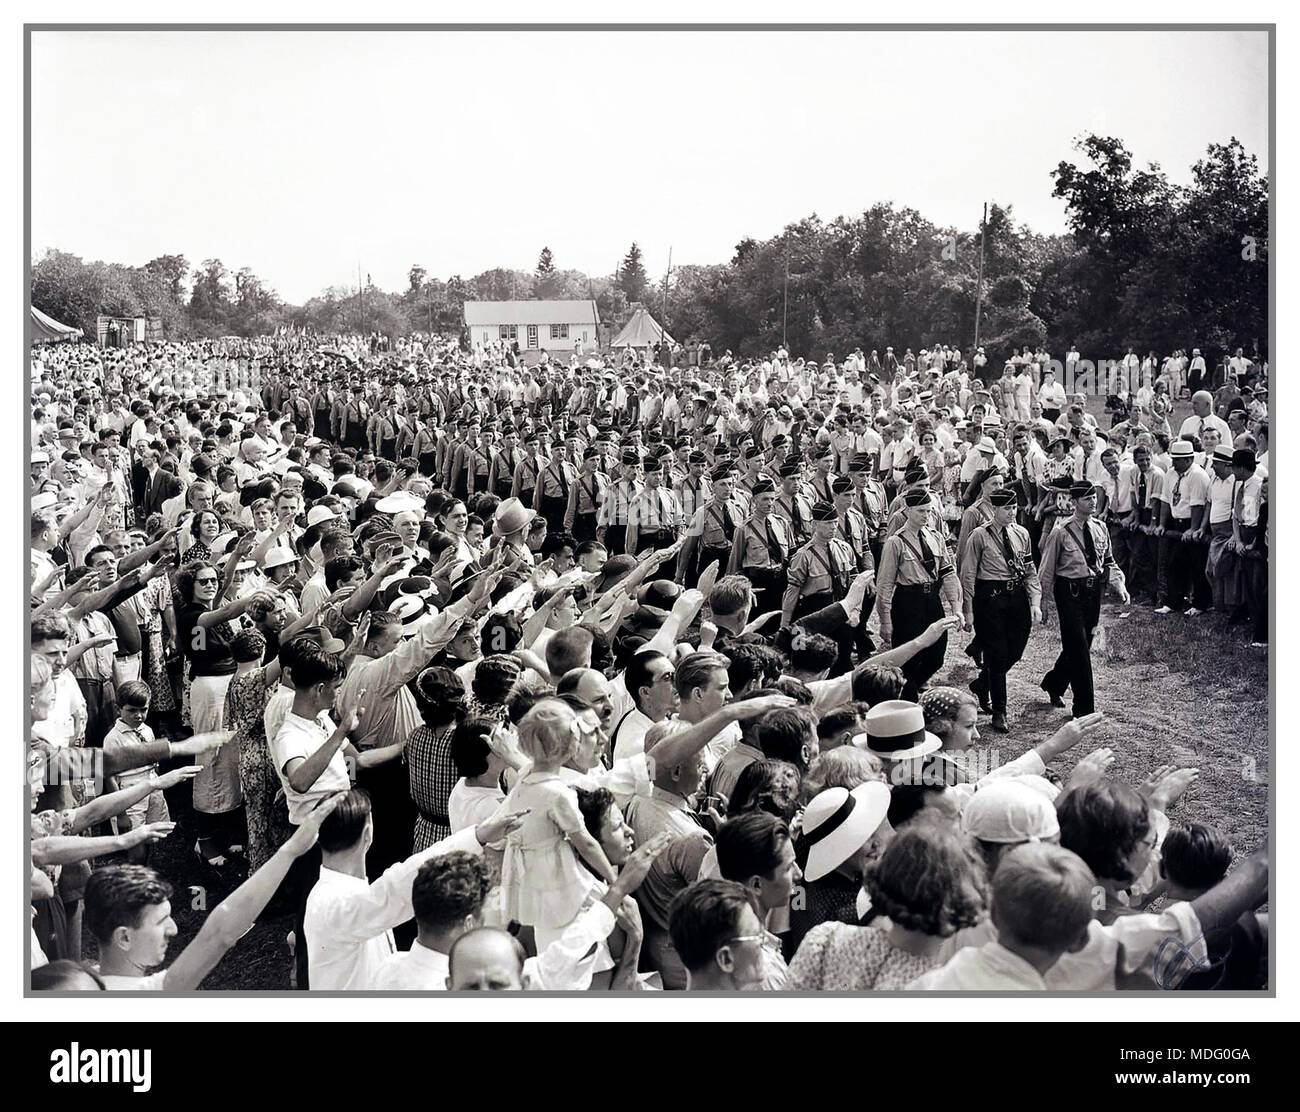 Storico Vintage Pre WW2 immagine del tedesco extoling americani "Tedesco virtù", dando il saluto nazista di giovani uomini marciando in divise nazista. L evento è stato un tedesco Day celebrazione promossa dalla American tedesco Bund Camp Sigfried Long Island USA Foto Stock